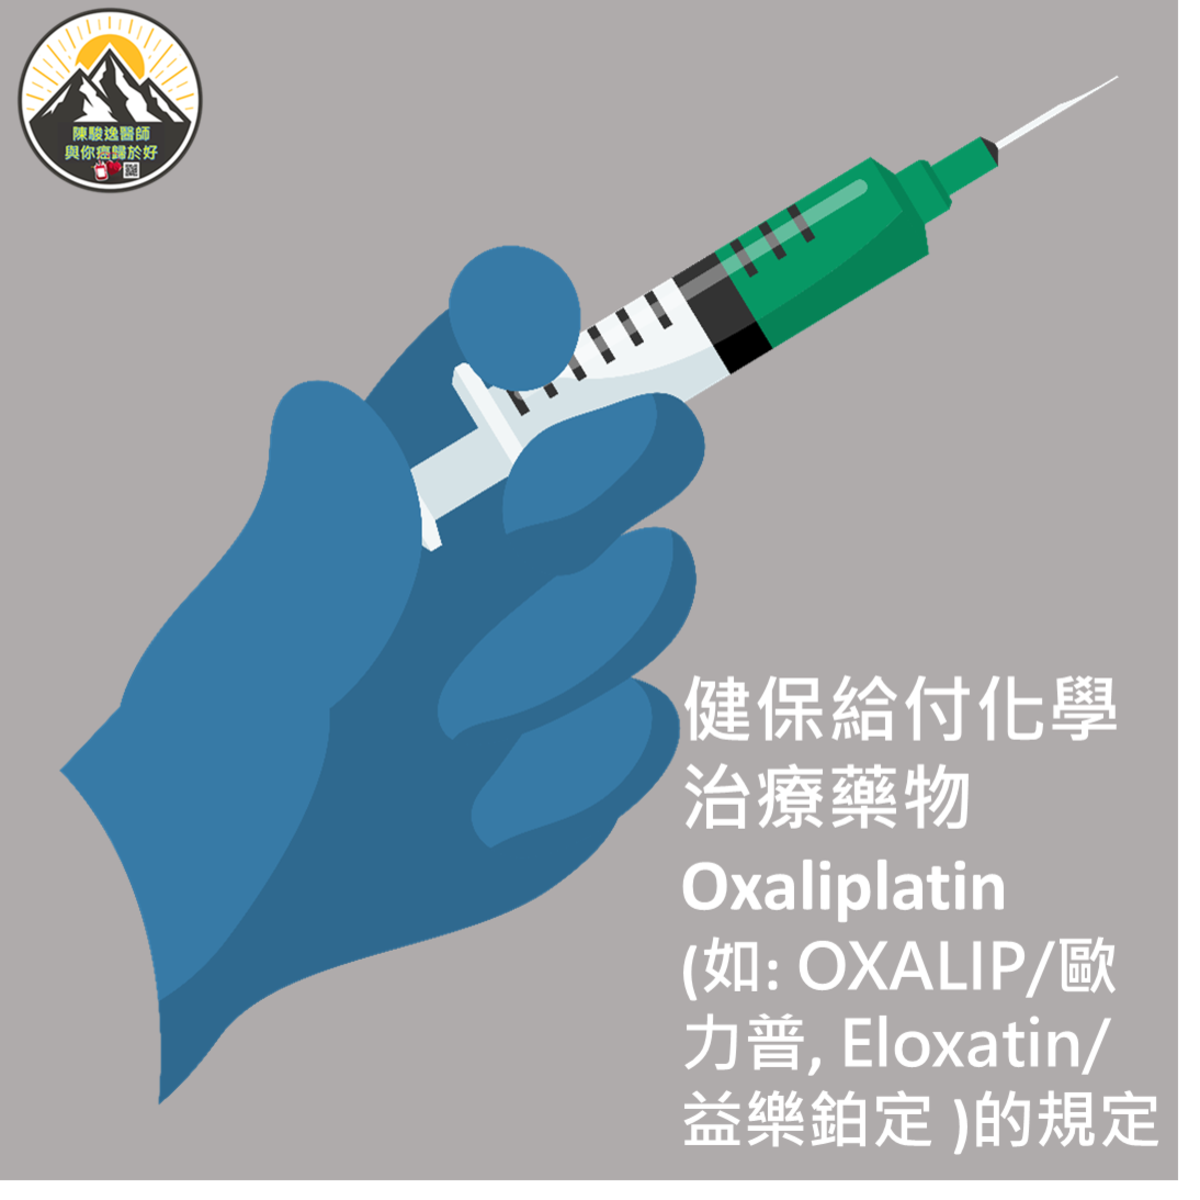 健保給付化學治療藥物Oxaliplatin (如: OXALIP/歐力普, Eloxatin/益樂鉑定 )的規定